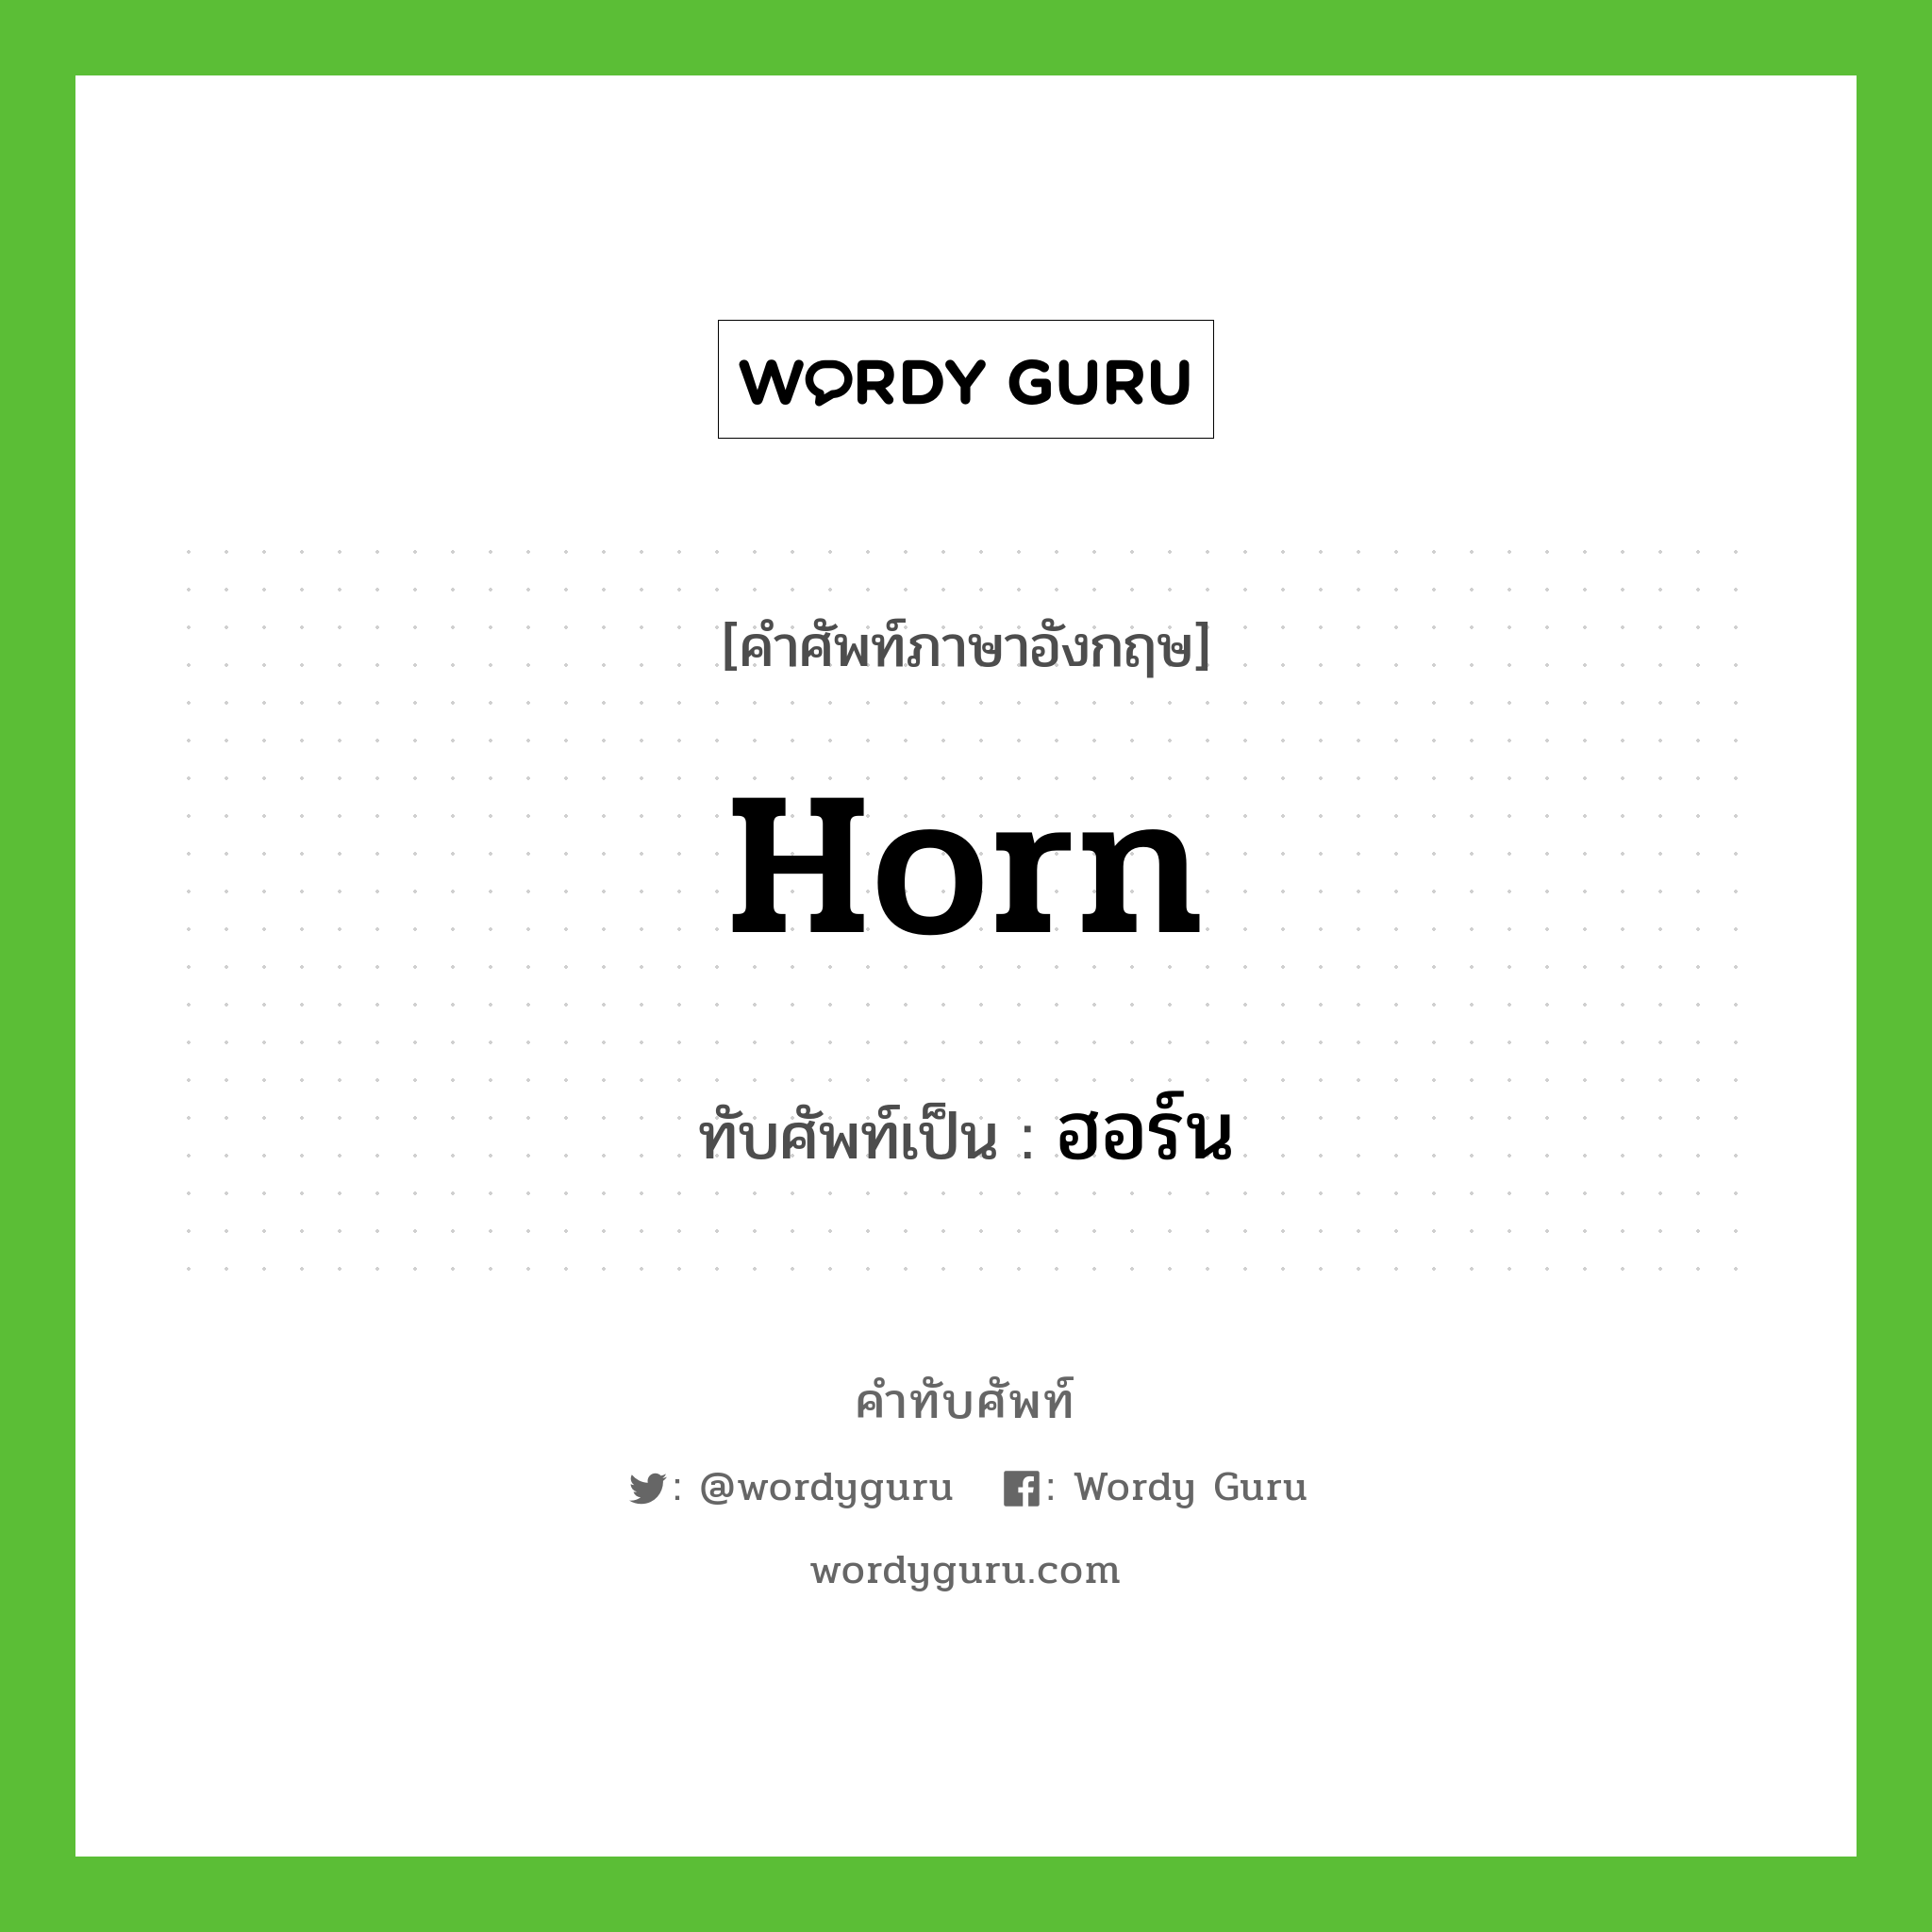 ฮอร์น เขียนอย่างไร?, คำศัพท์ภาษาอังกฤษ ฮอร์น ทับศัพท์เป็น horn